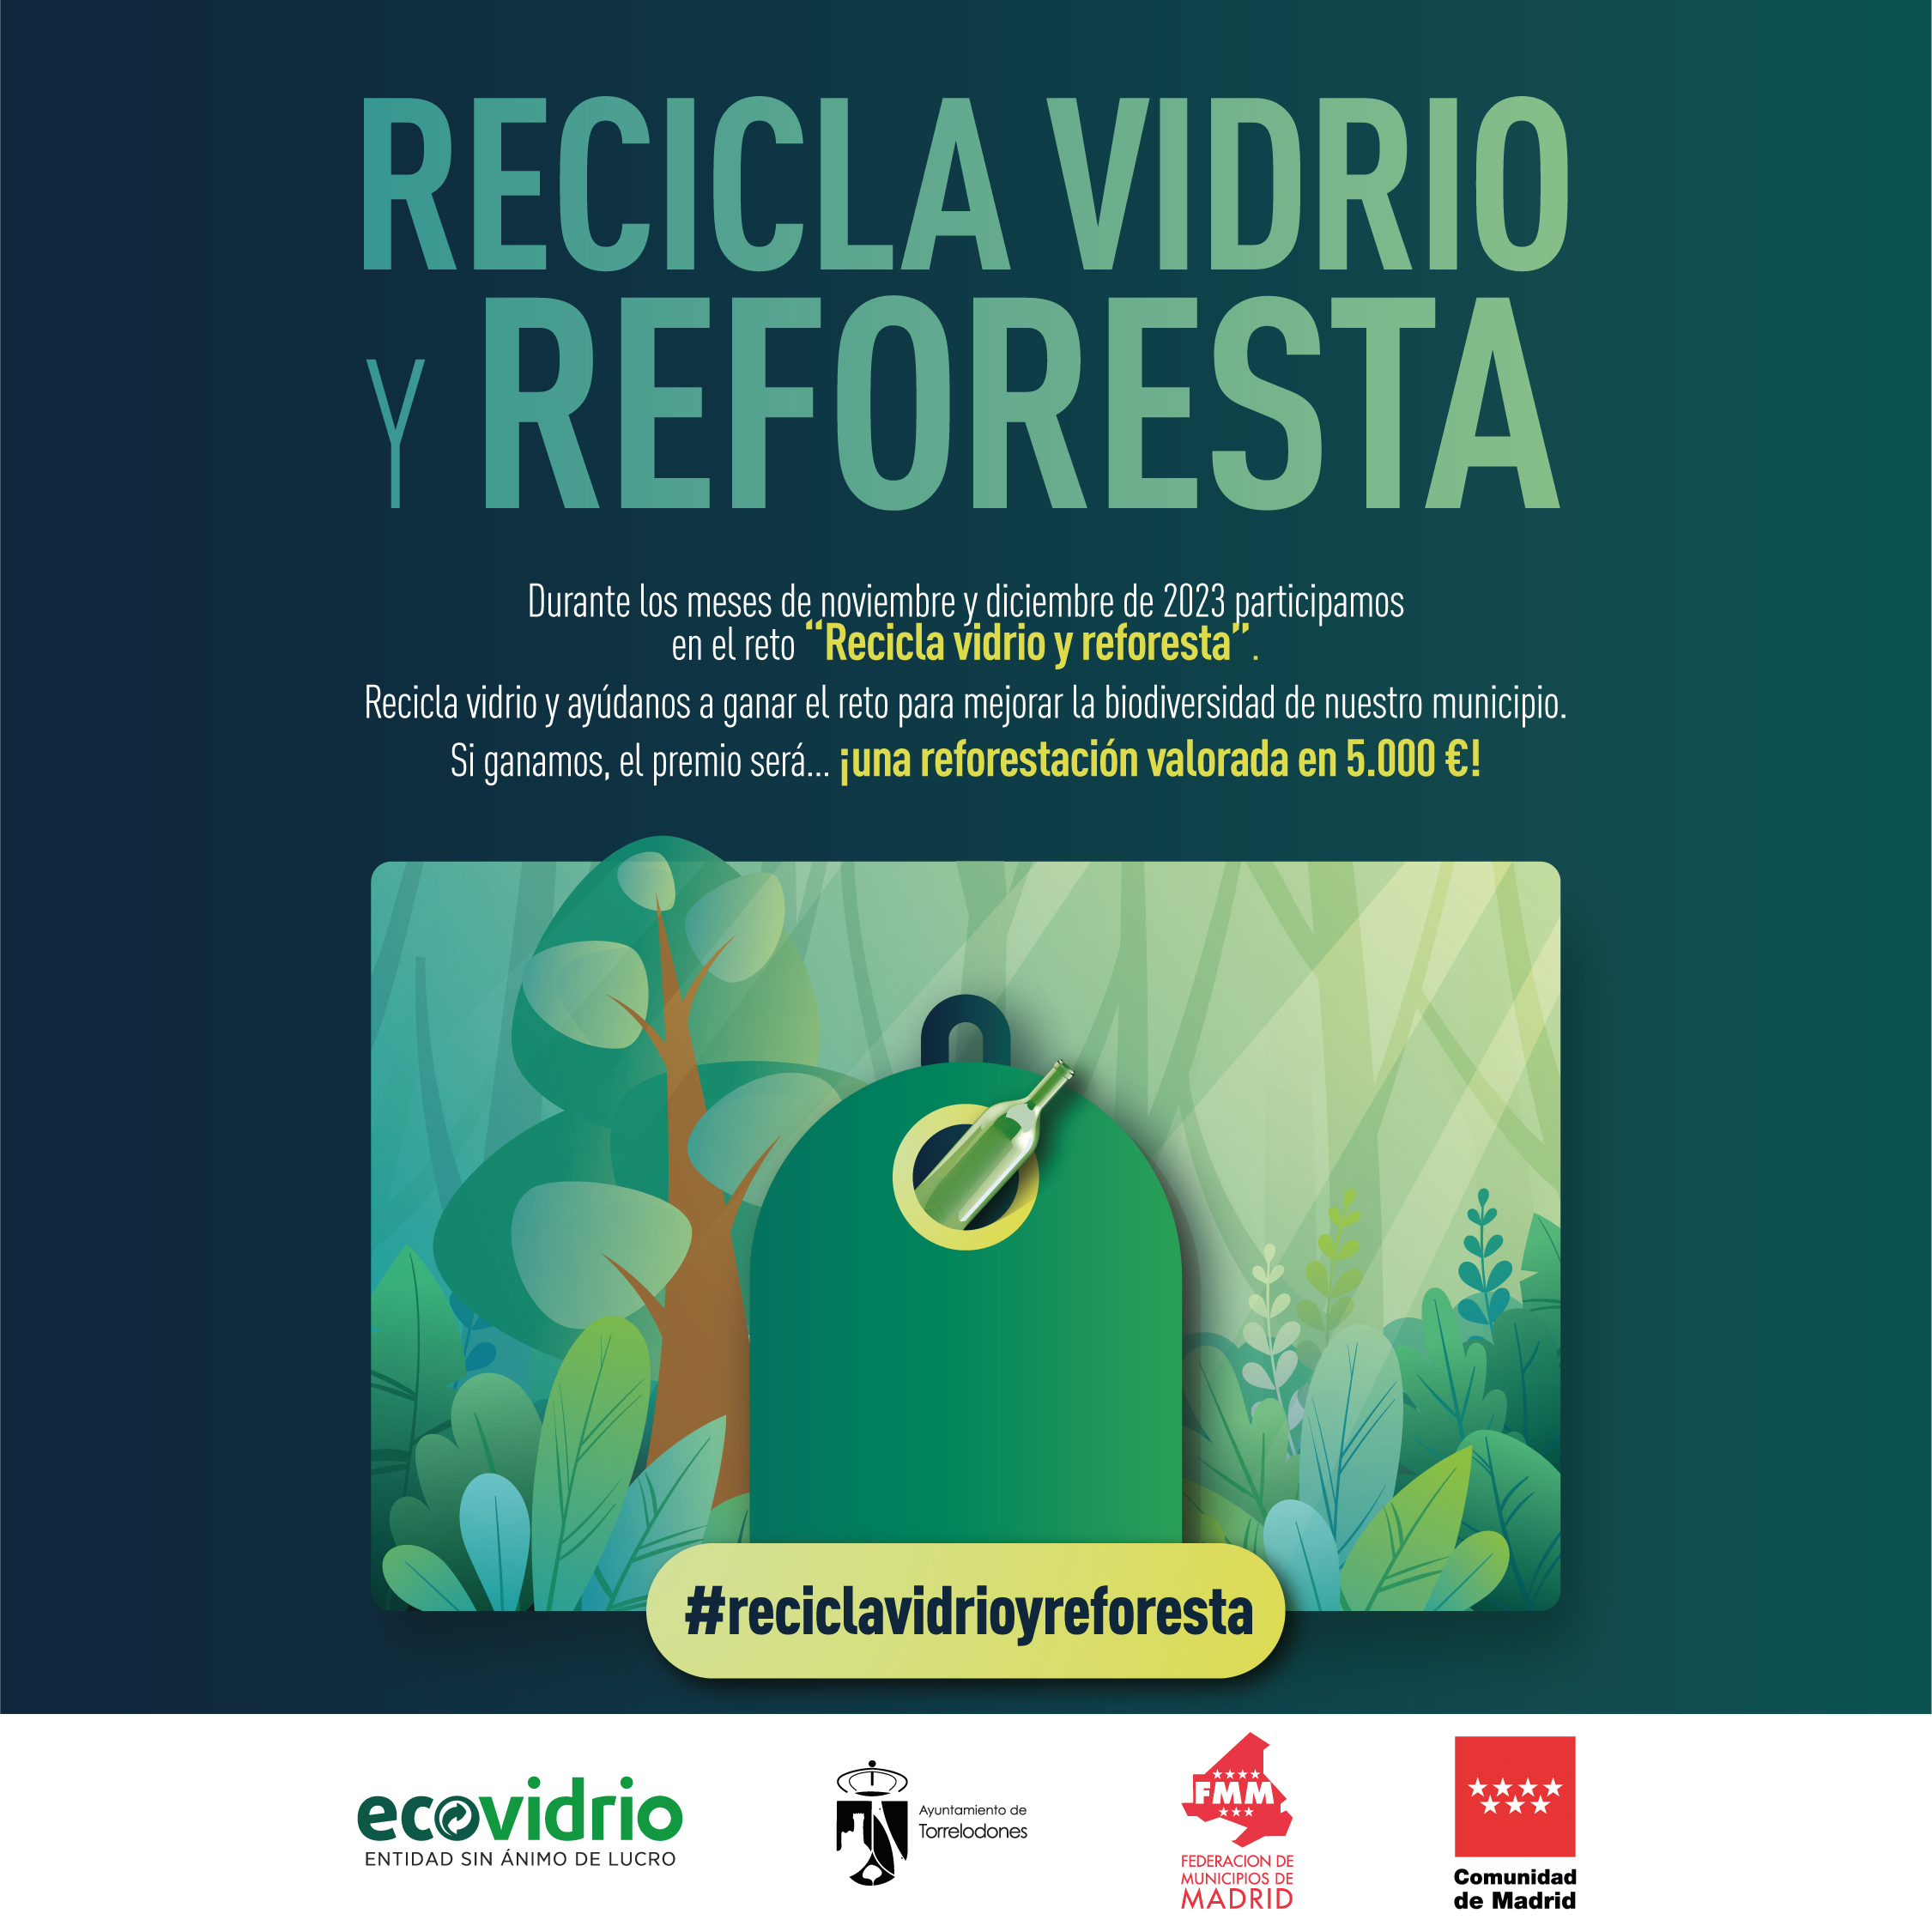 Ecovidrio y el Ayuntamiento de Torrelodones presentan la campaña “Recicla vidrio y reforesta”